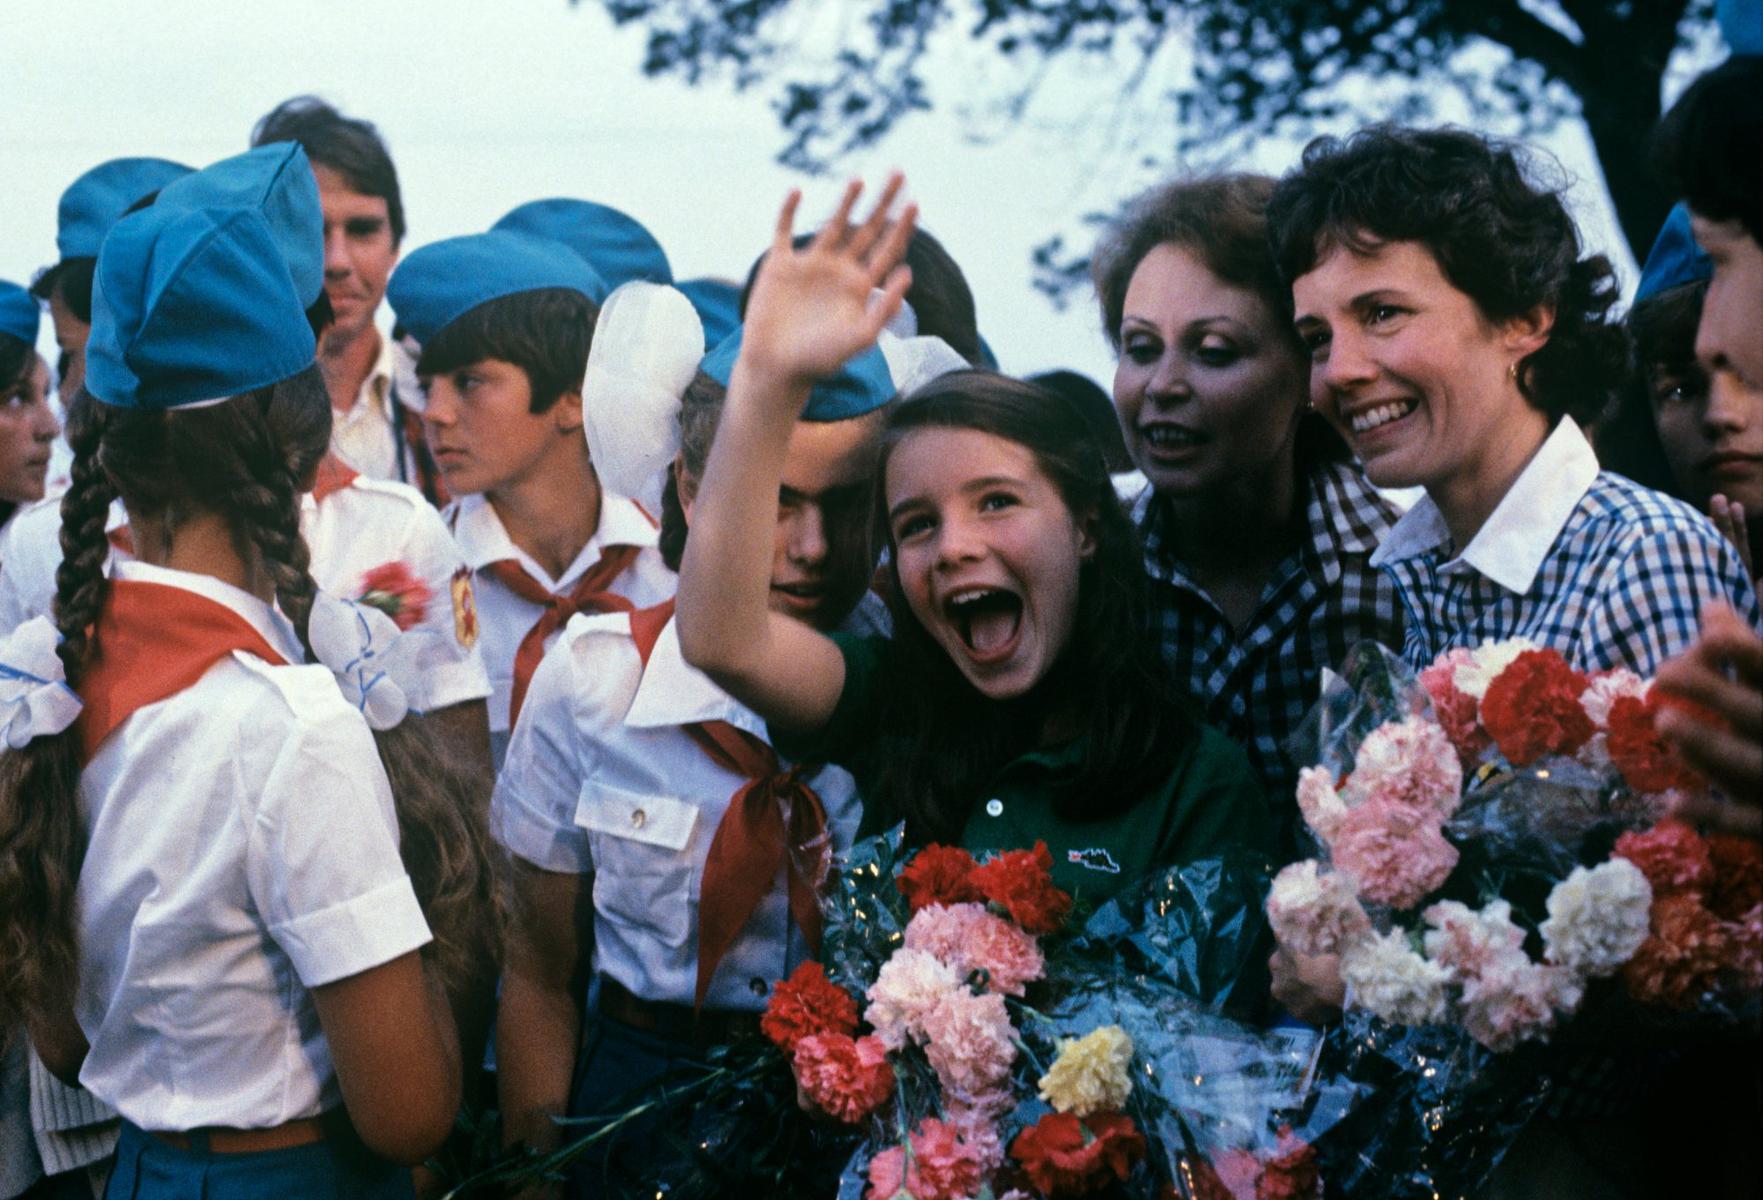 Саманта Смит во время визита в СССР по приглашению генсека Андропова посещает «Артек». 1983 год